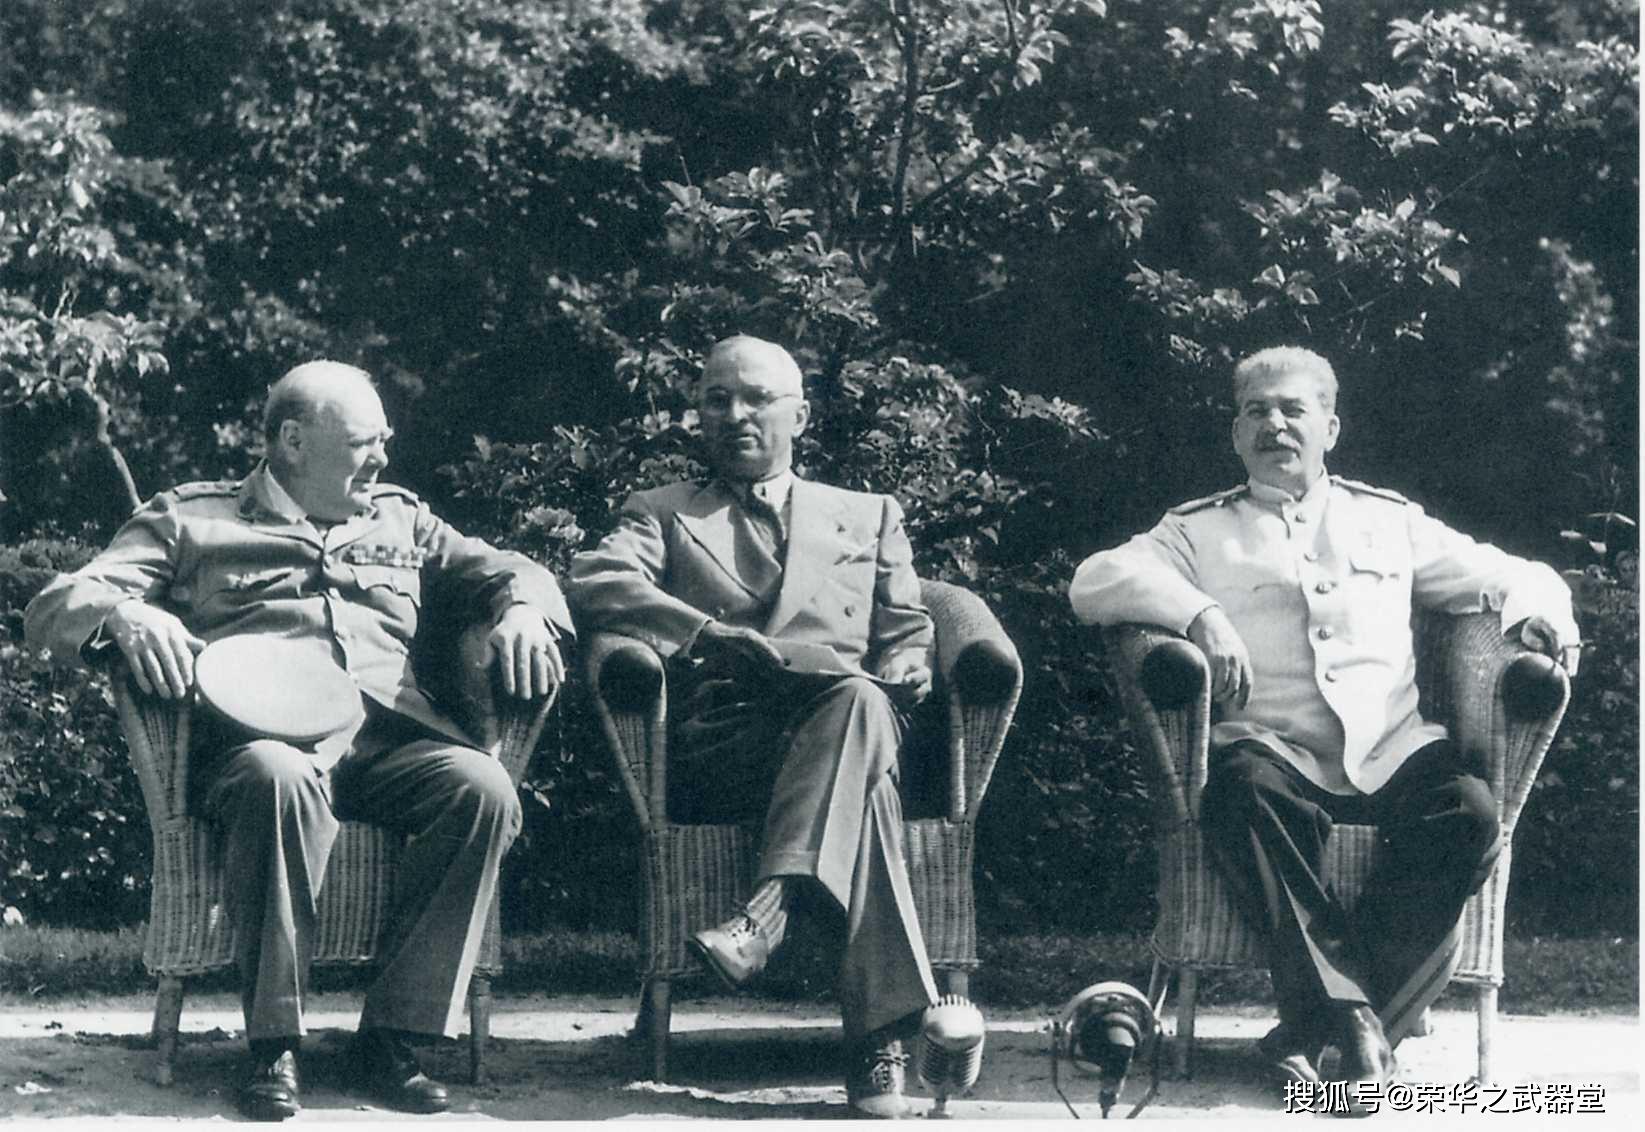 波茨坦会议三巨头,彼此心照不宣1945年5月2日,苏联红军攻克法西斯德国